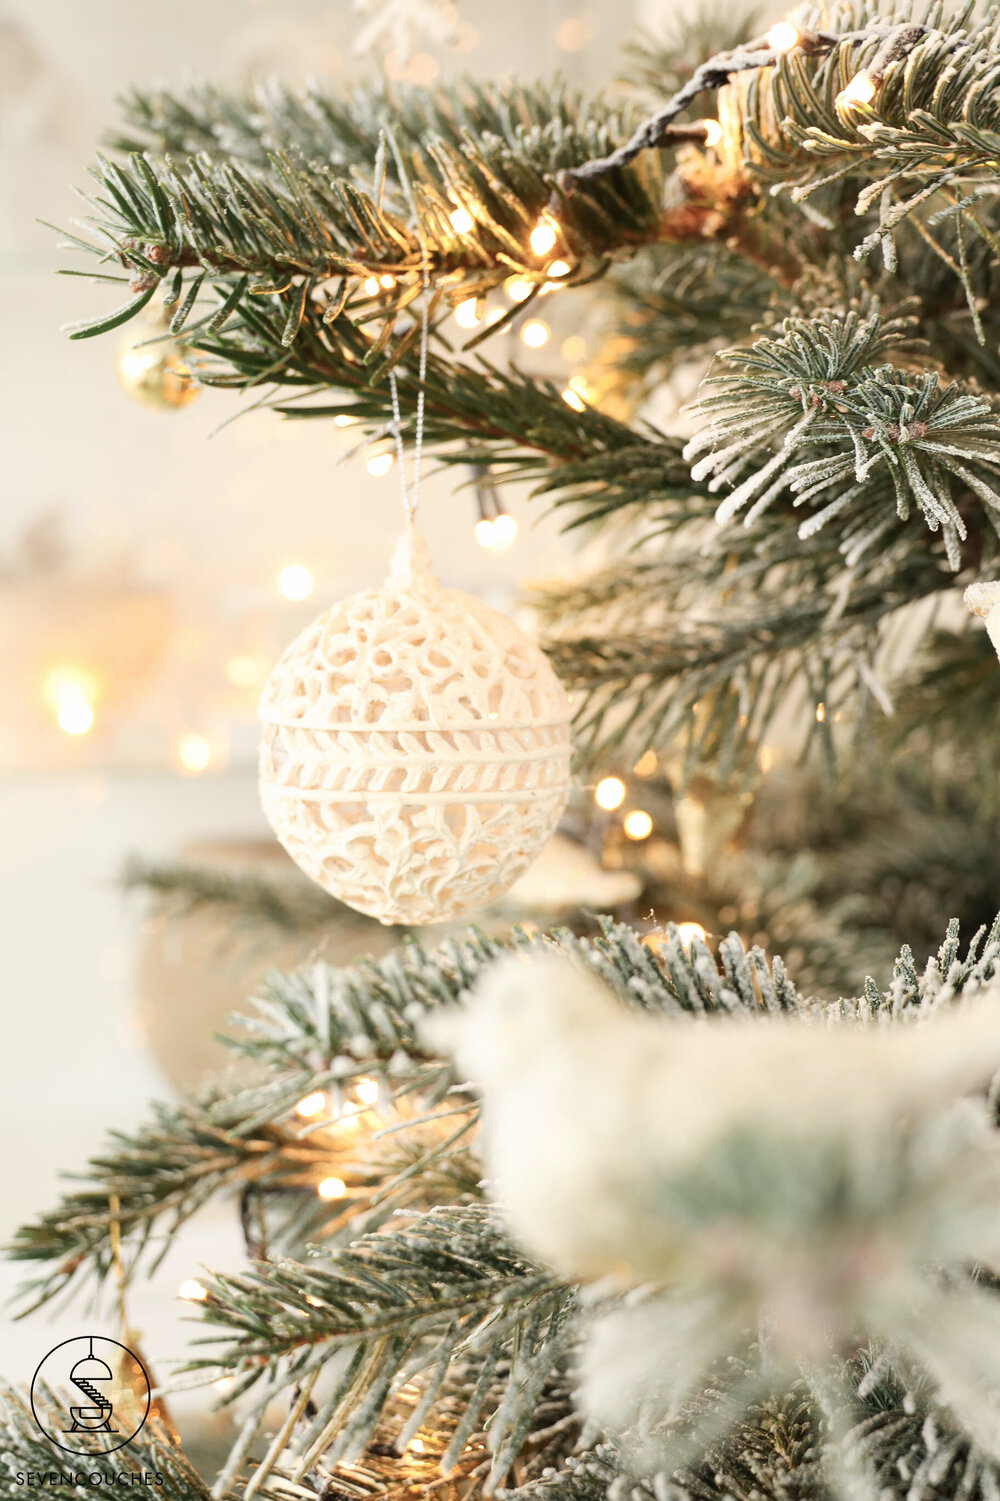 kogel Adviseur vals Nordmann voor een piek: mijn ervaring met de IKEA-kerstboom — sevencouches